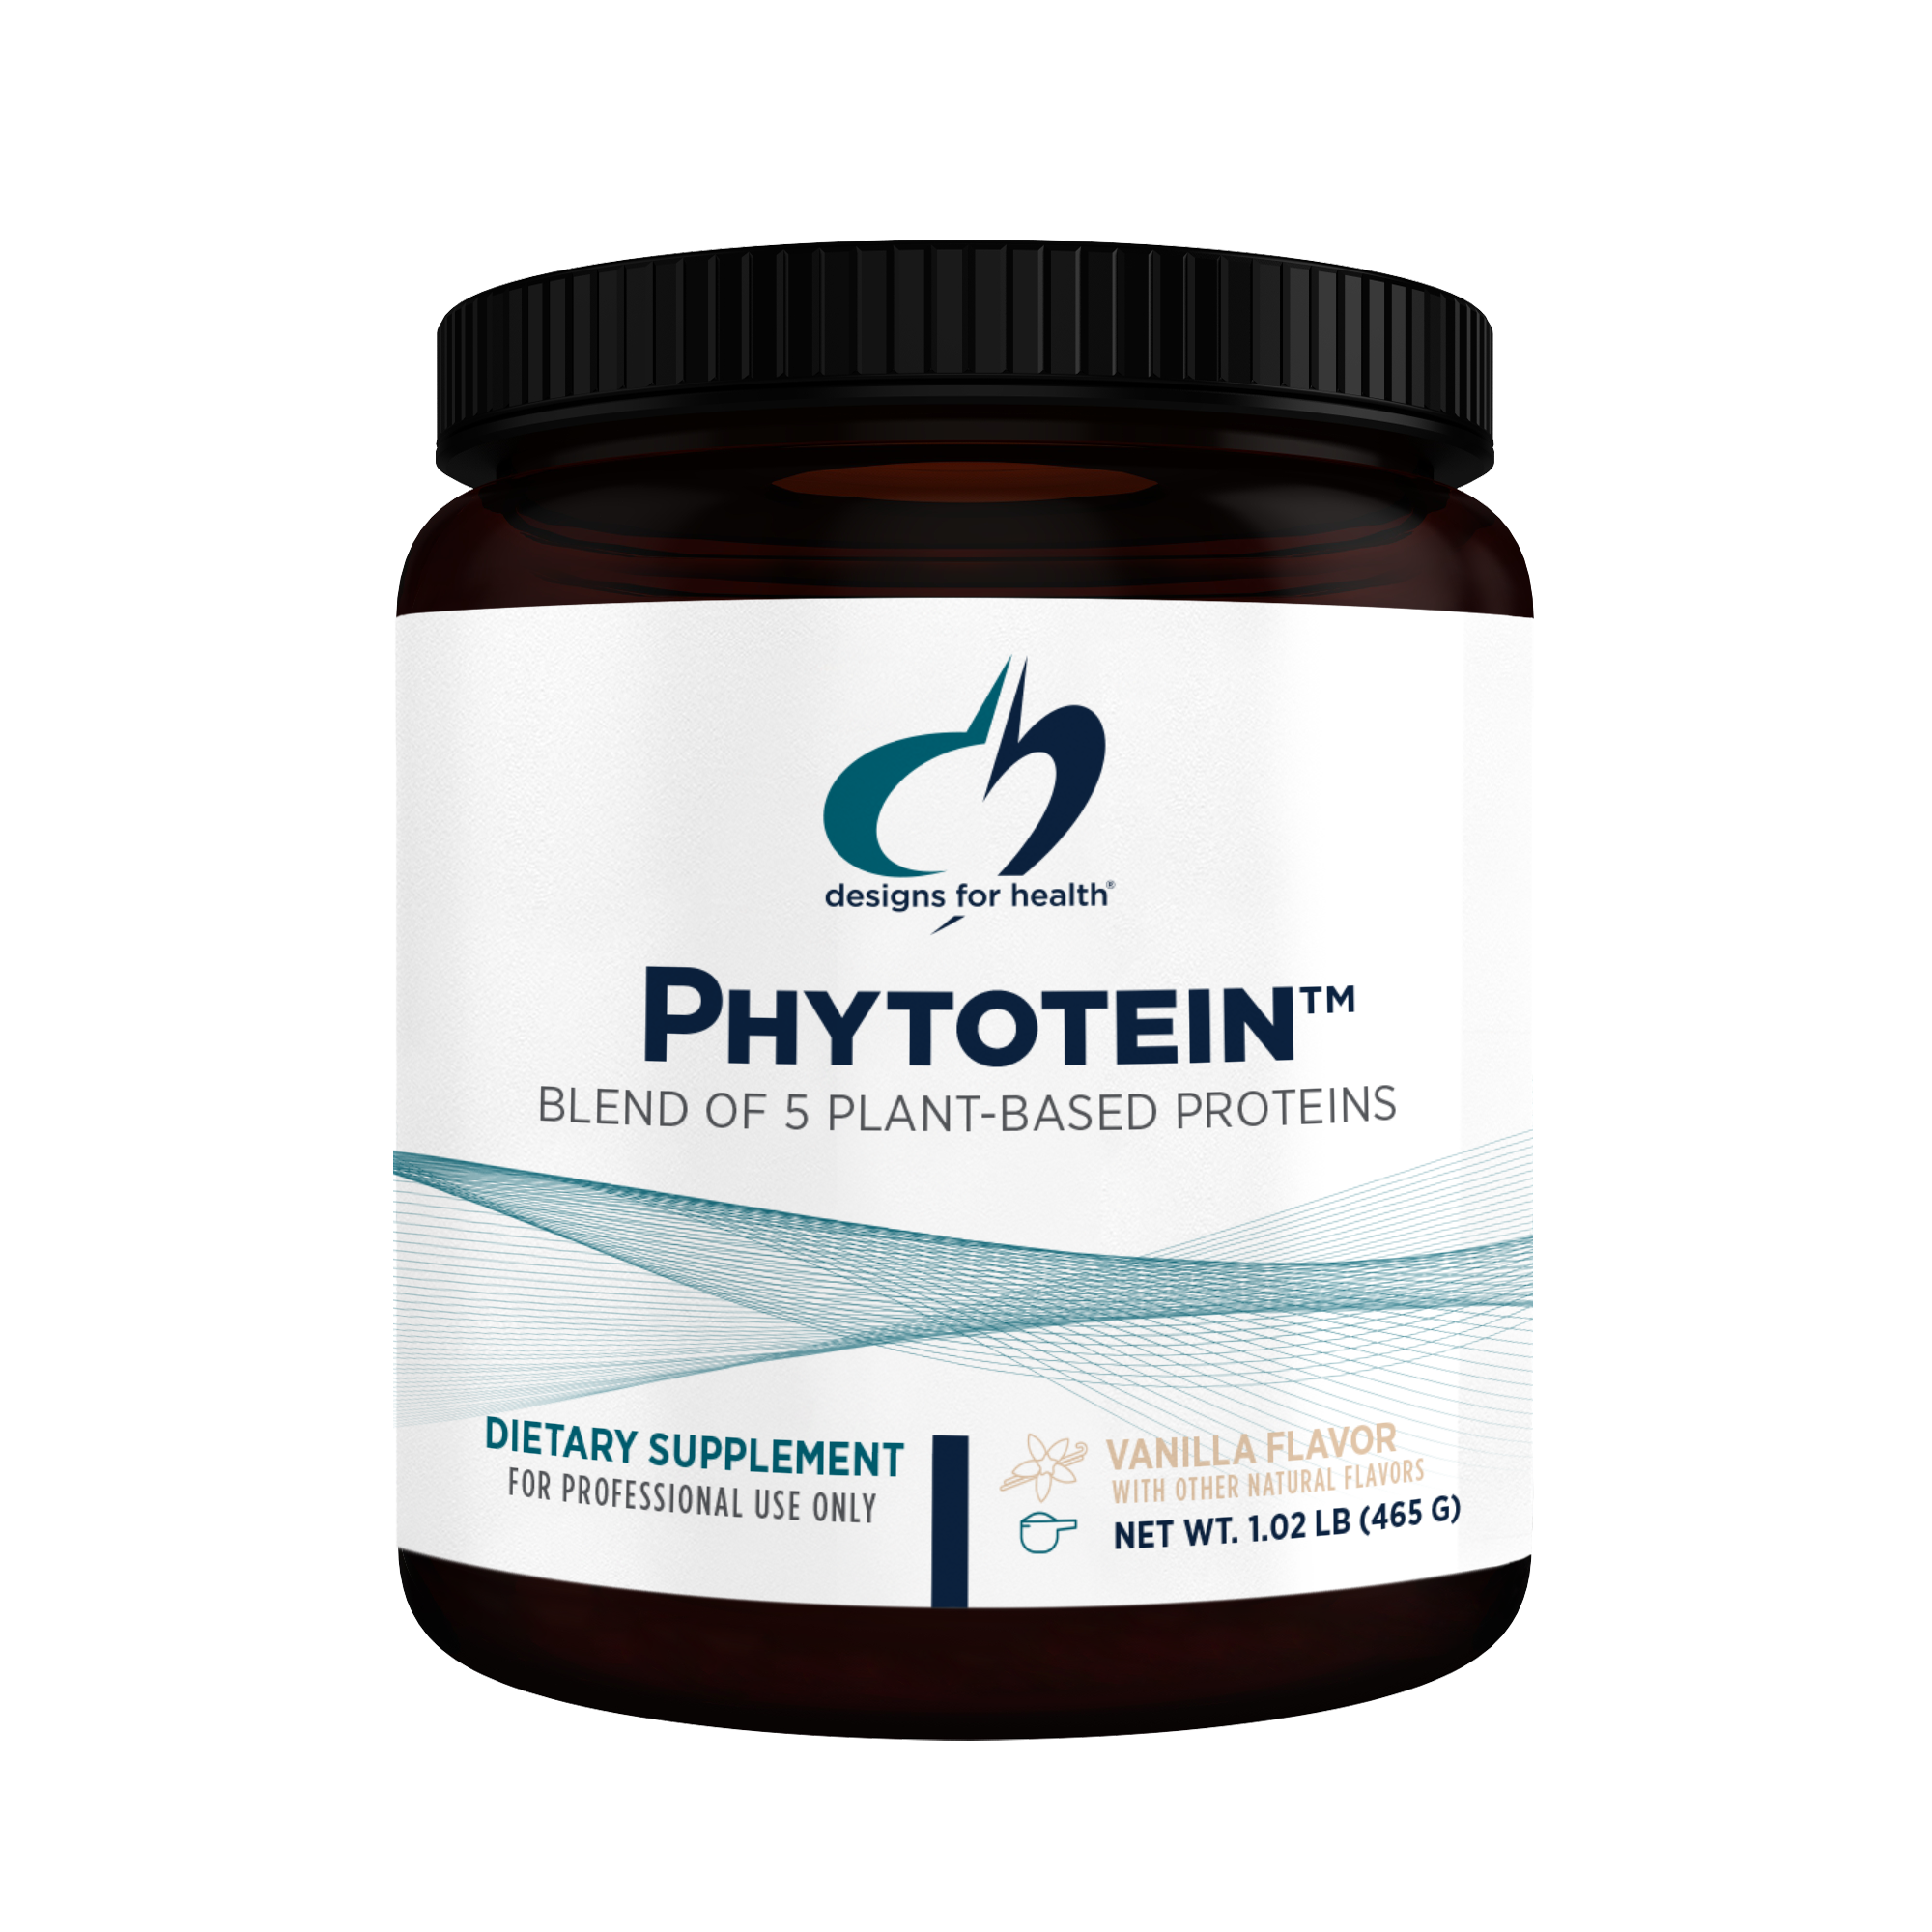 Phytotein™